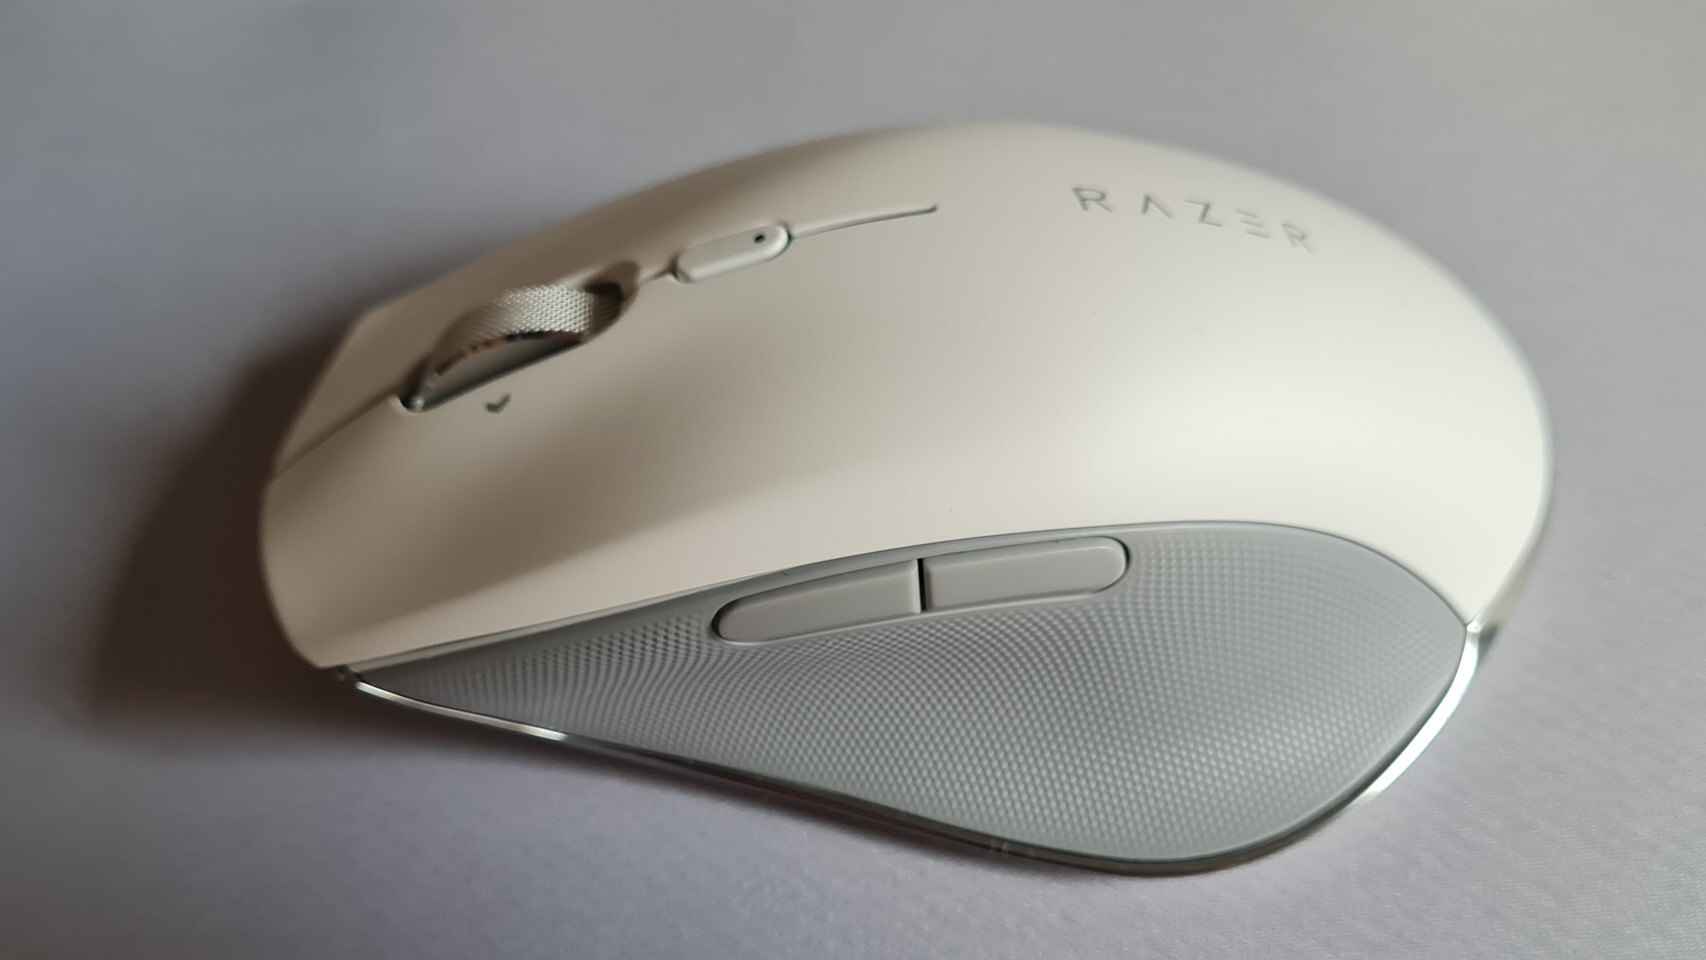 Con un esquema de color en blanco y gris, el Razer Pro Click destaca